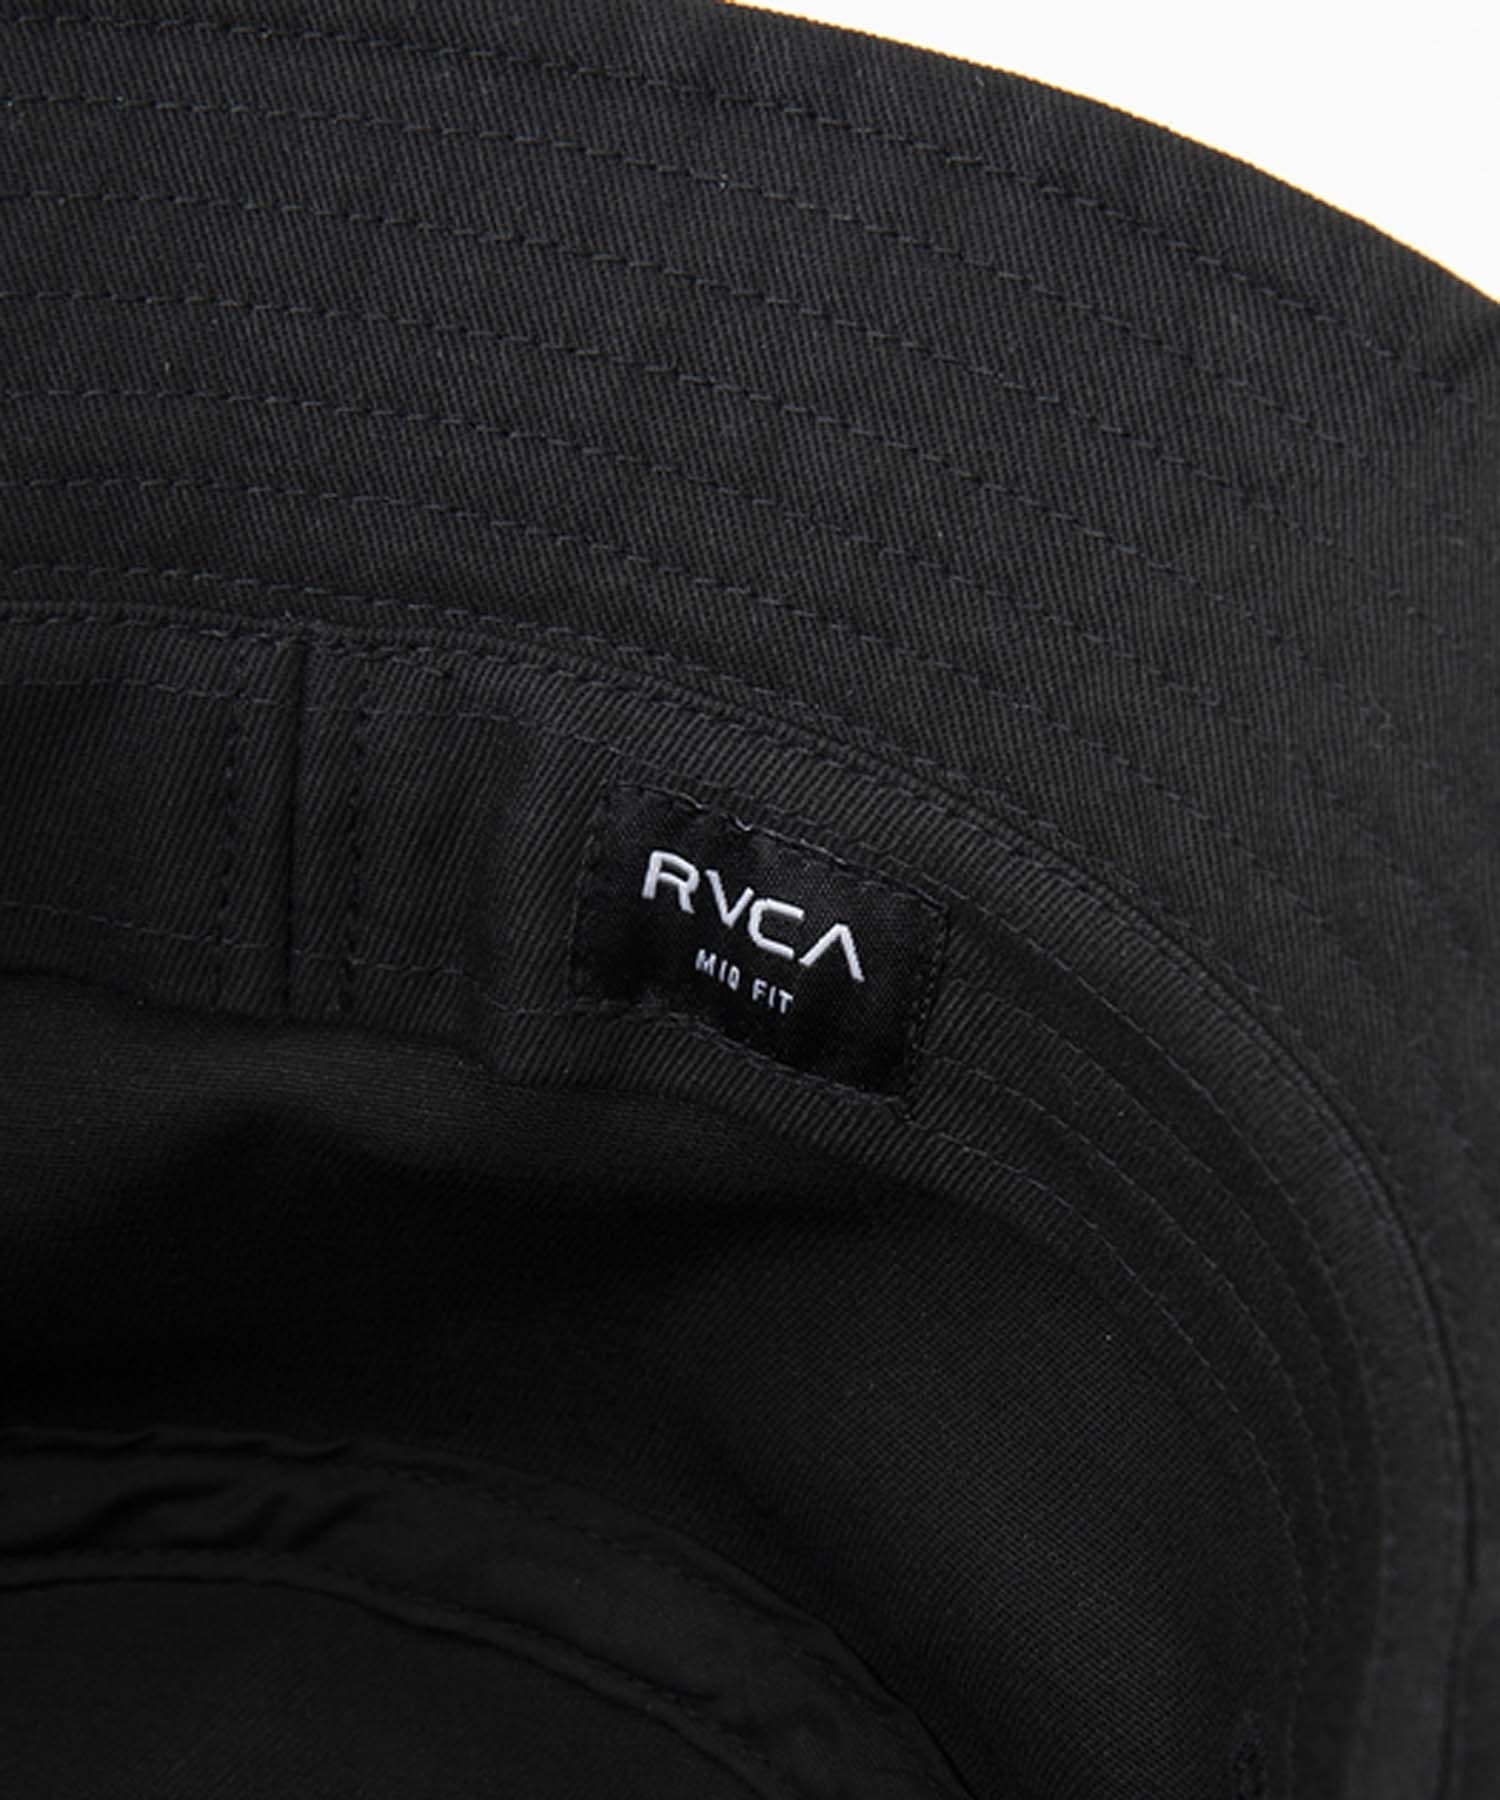 RVCA/ルーカ BUCKET HAT バケットハット バケハ メンズ BE041-930(CRE-FREE)